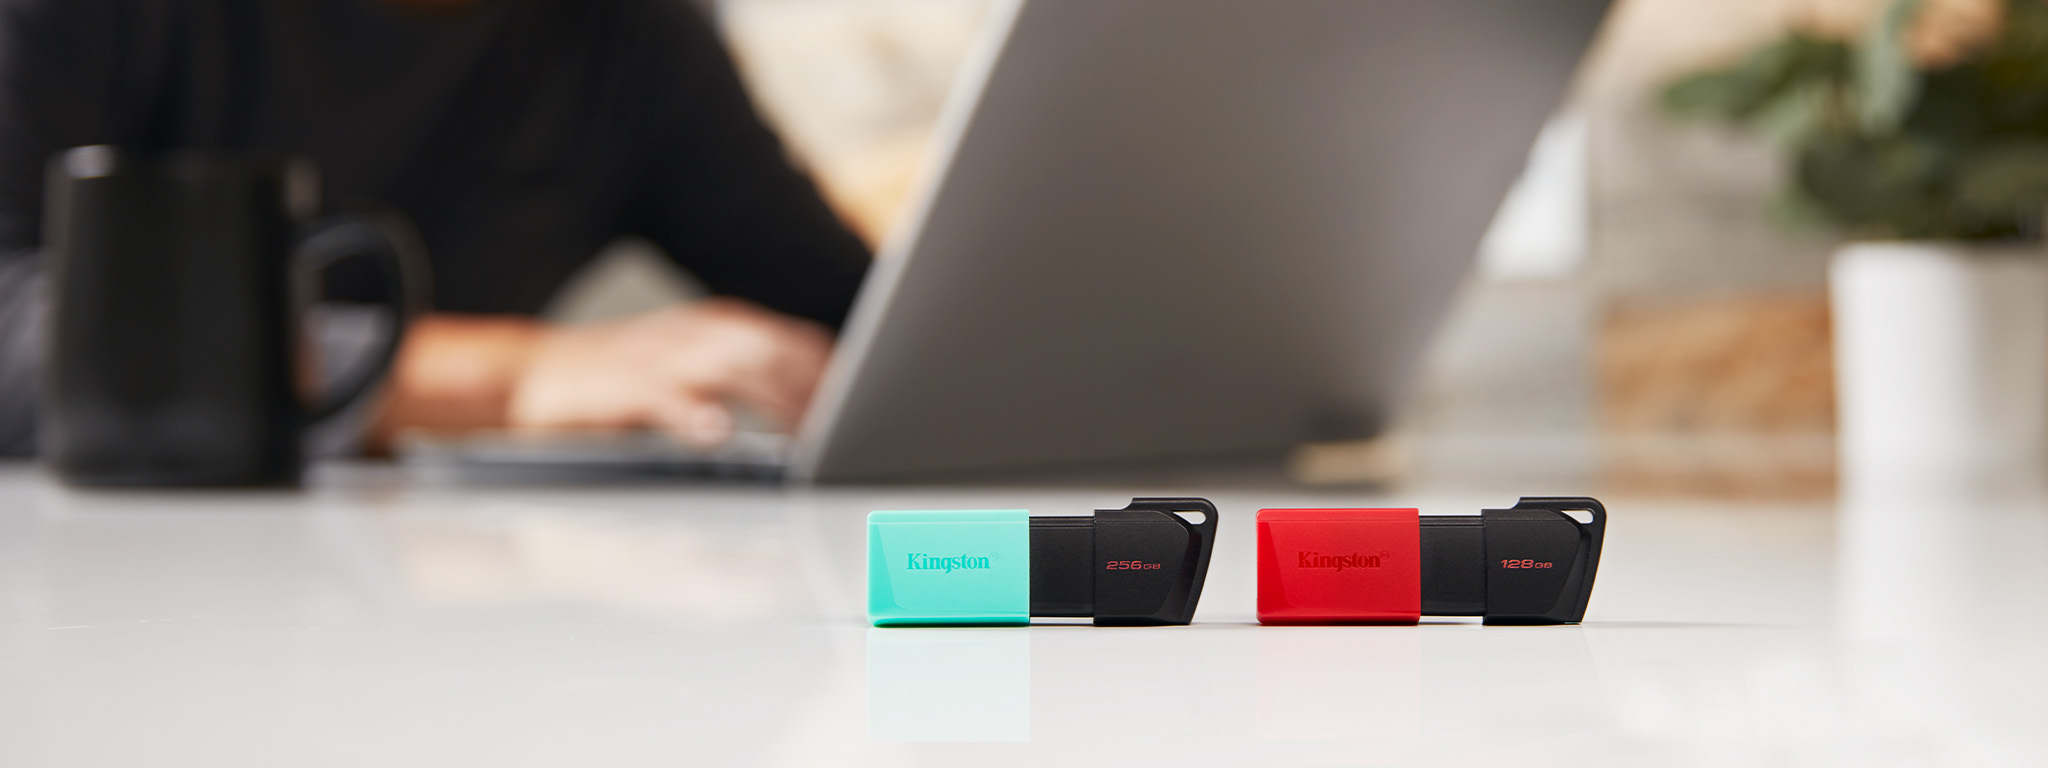 DT Exodia M แฟลชไดรฟ์ USB สองชิ้น (ชิ้นหนึ่งมีฝาสีเขียว ส่วนอีกชิ้นมีฝาสีแดง) วางอยู่ที่ขอบโต๊ะ โดยมีคนกำลังใช้โน้ตบุ๊กอยู่ด้านหลัง